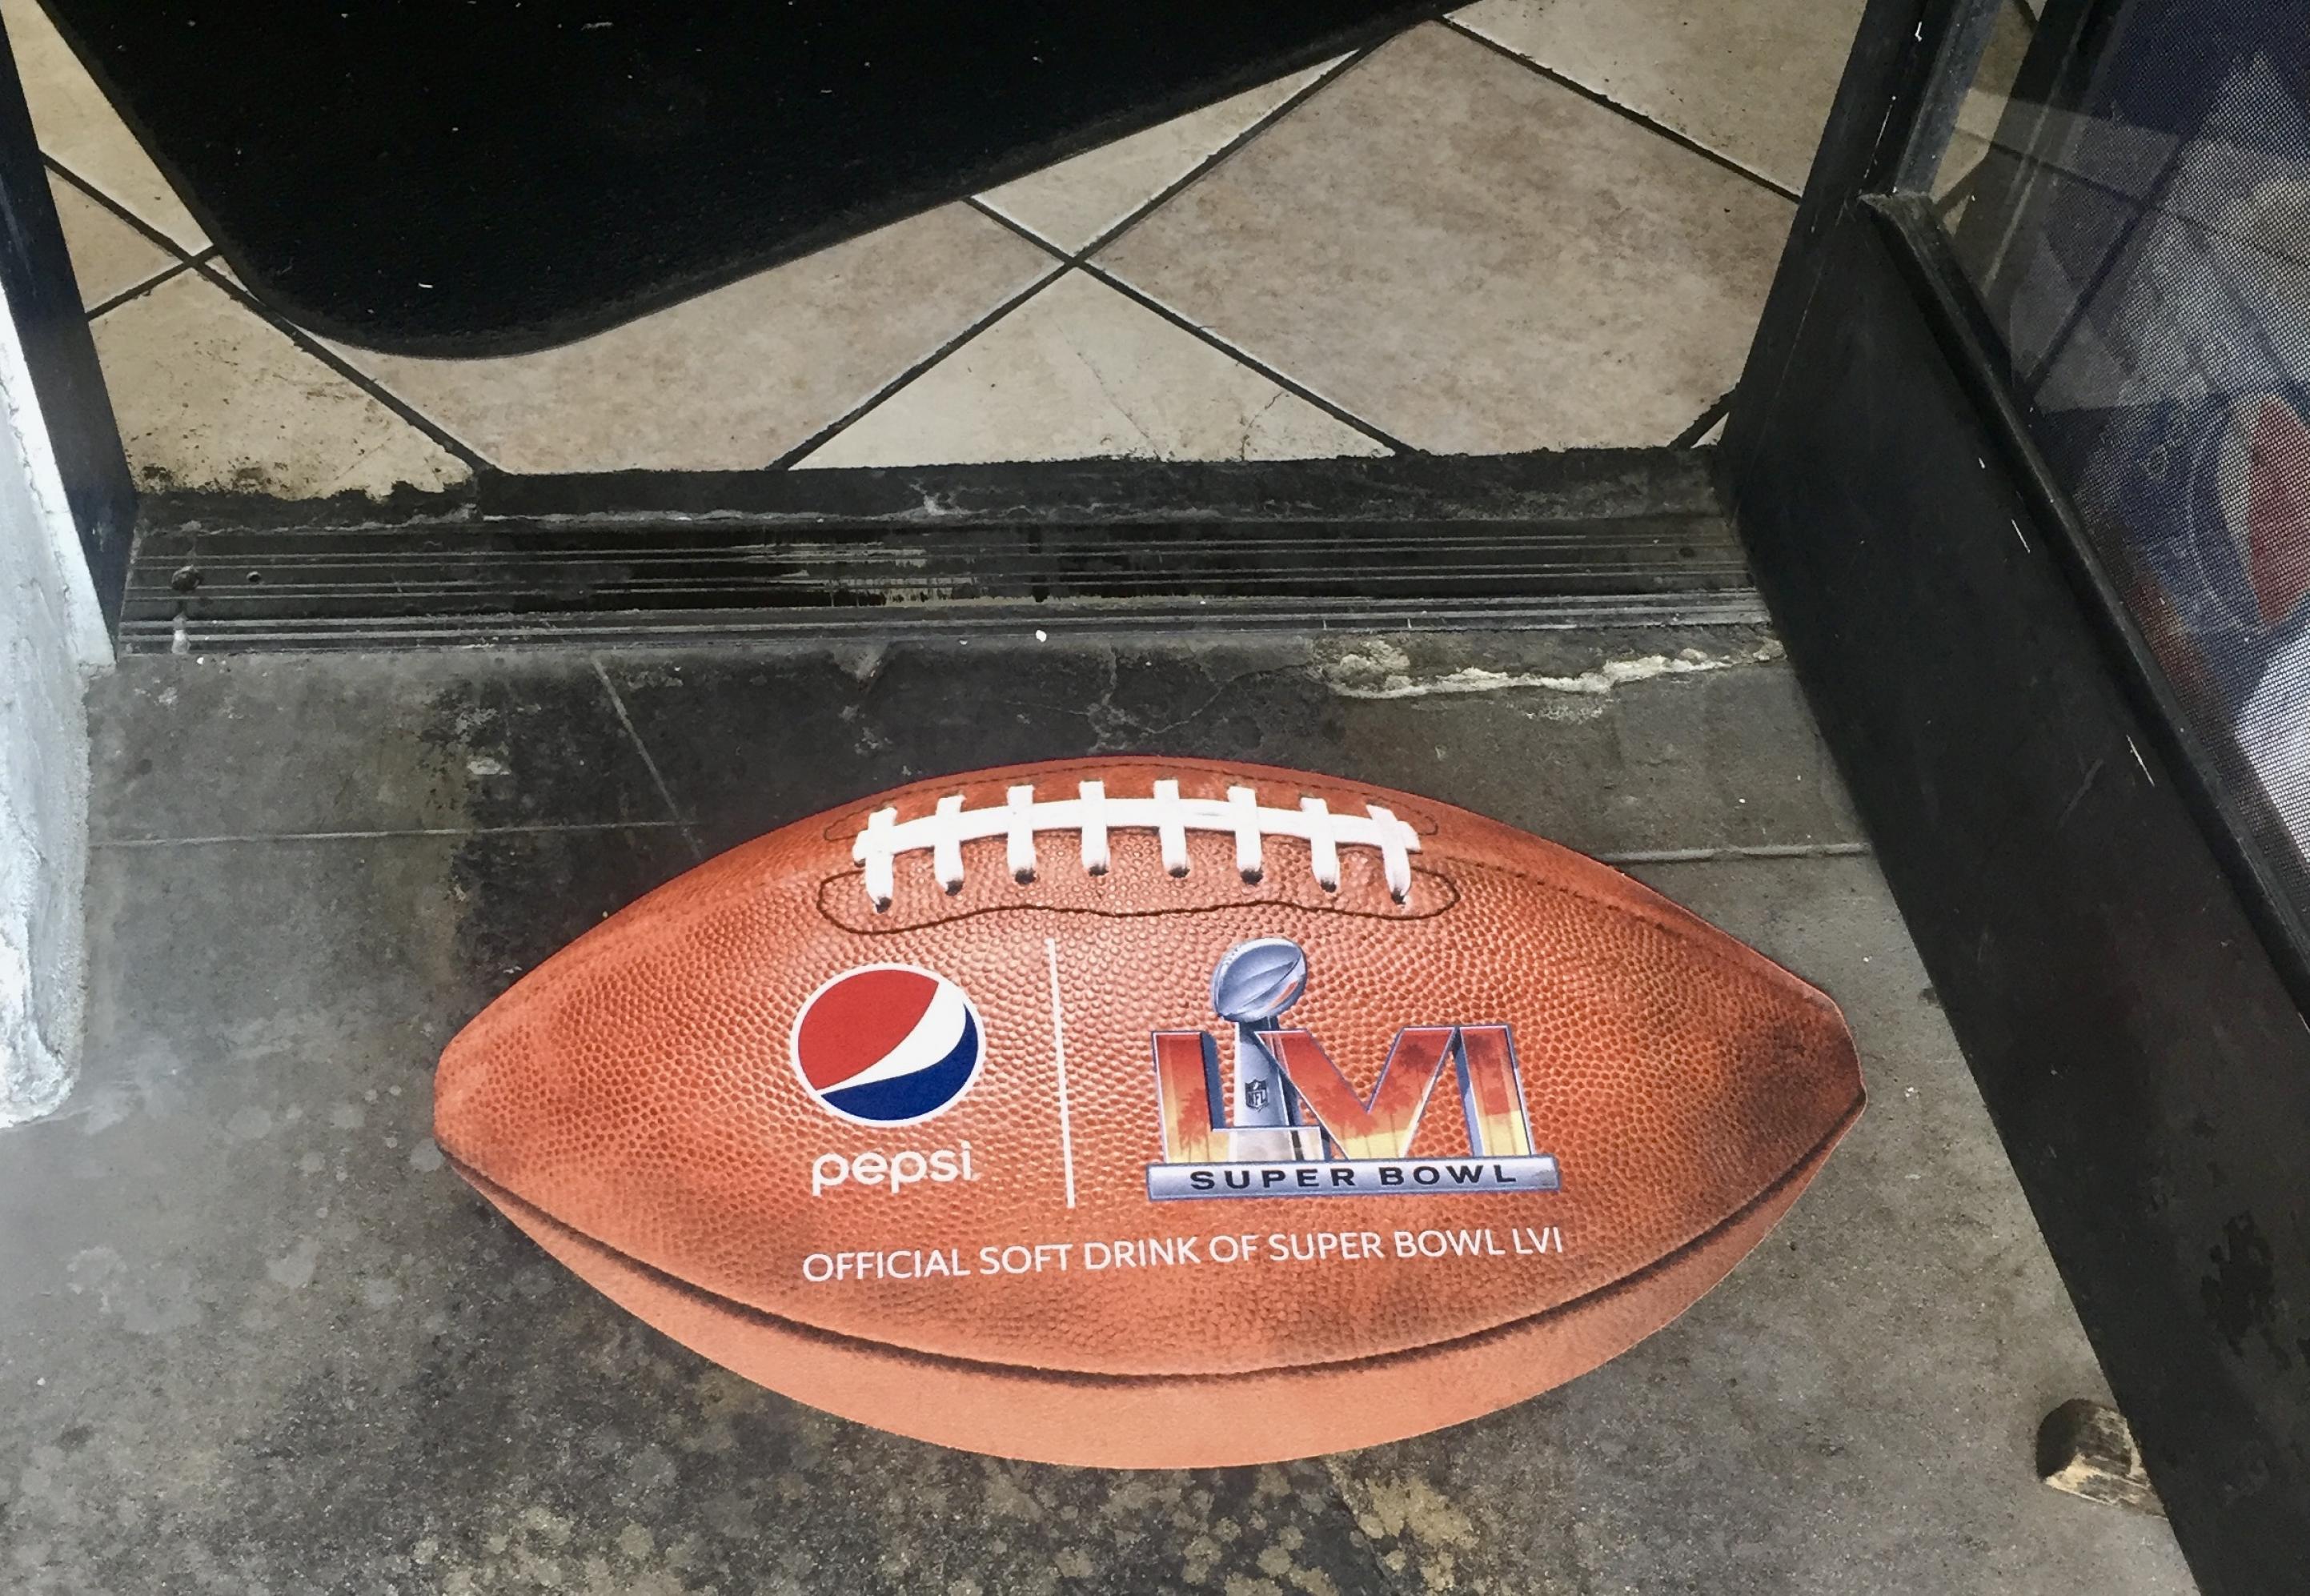 Ein Aufkleber in Form und Größe eines Footballs wirbt auf den Boden im Eingang des Imbiss restaurants Munchkins für den 56. Super Bowl und für den Sponsor Pepsi. Dahinter die kacheln des Fussbodens und eine schwarze Fußmatte.